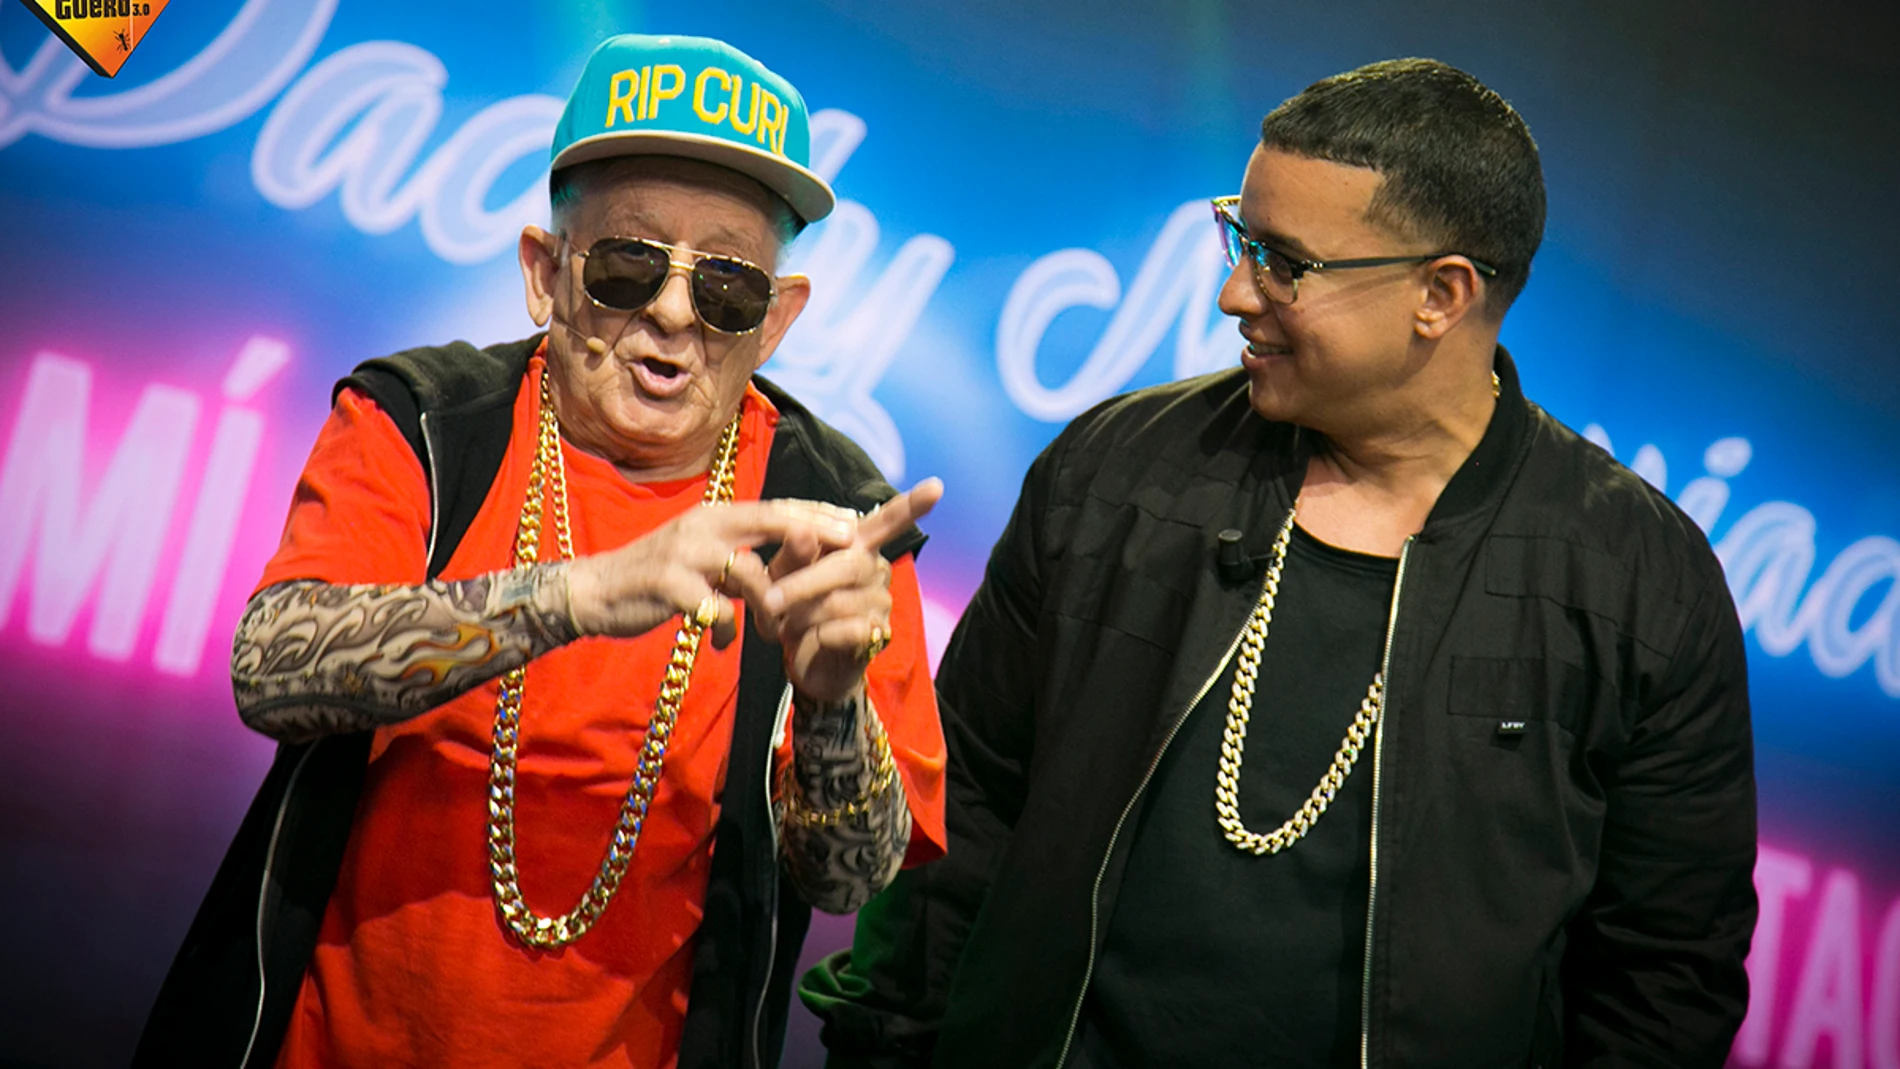 'El Hormiguero 3.0' vive su encuentro más esperado: Daddy Yankee y Daddy Melquiades bailan juntos 'A mi me gusta el TACA TACA'